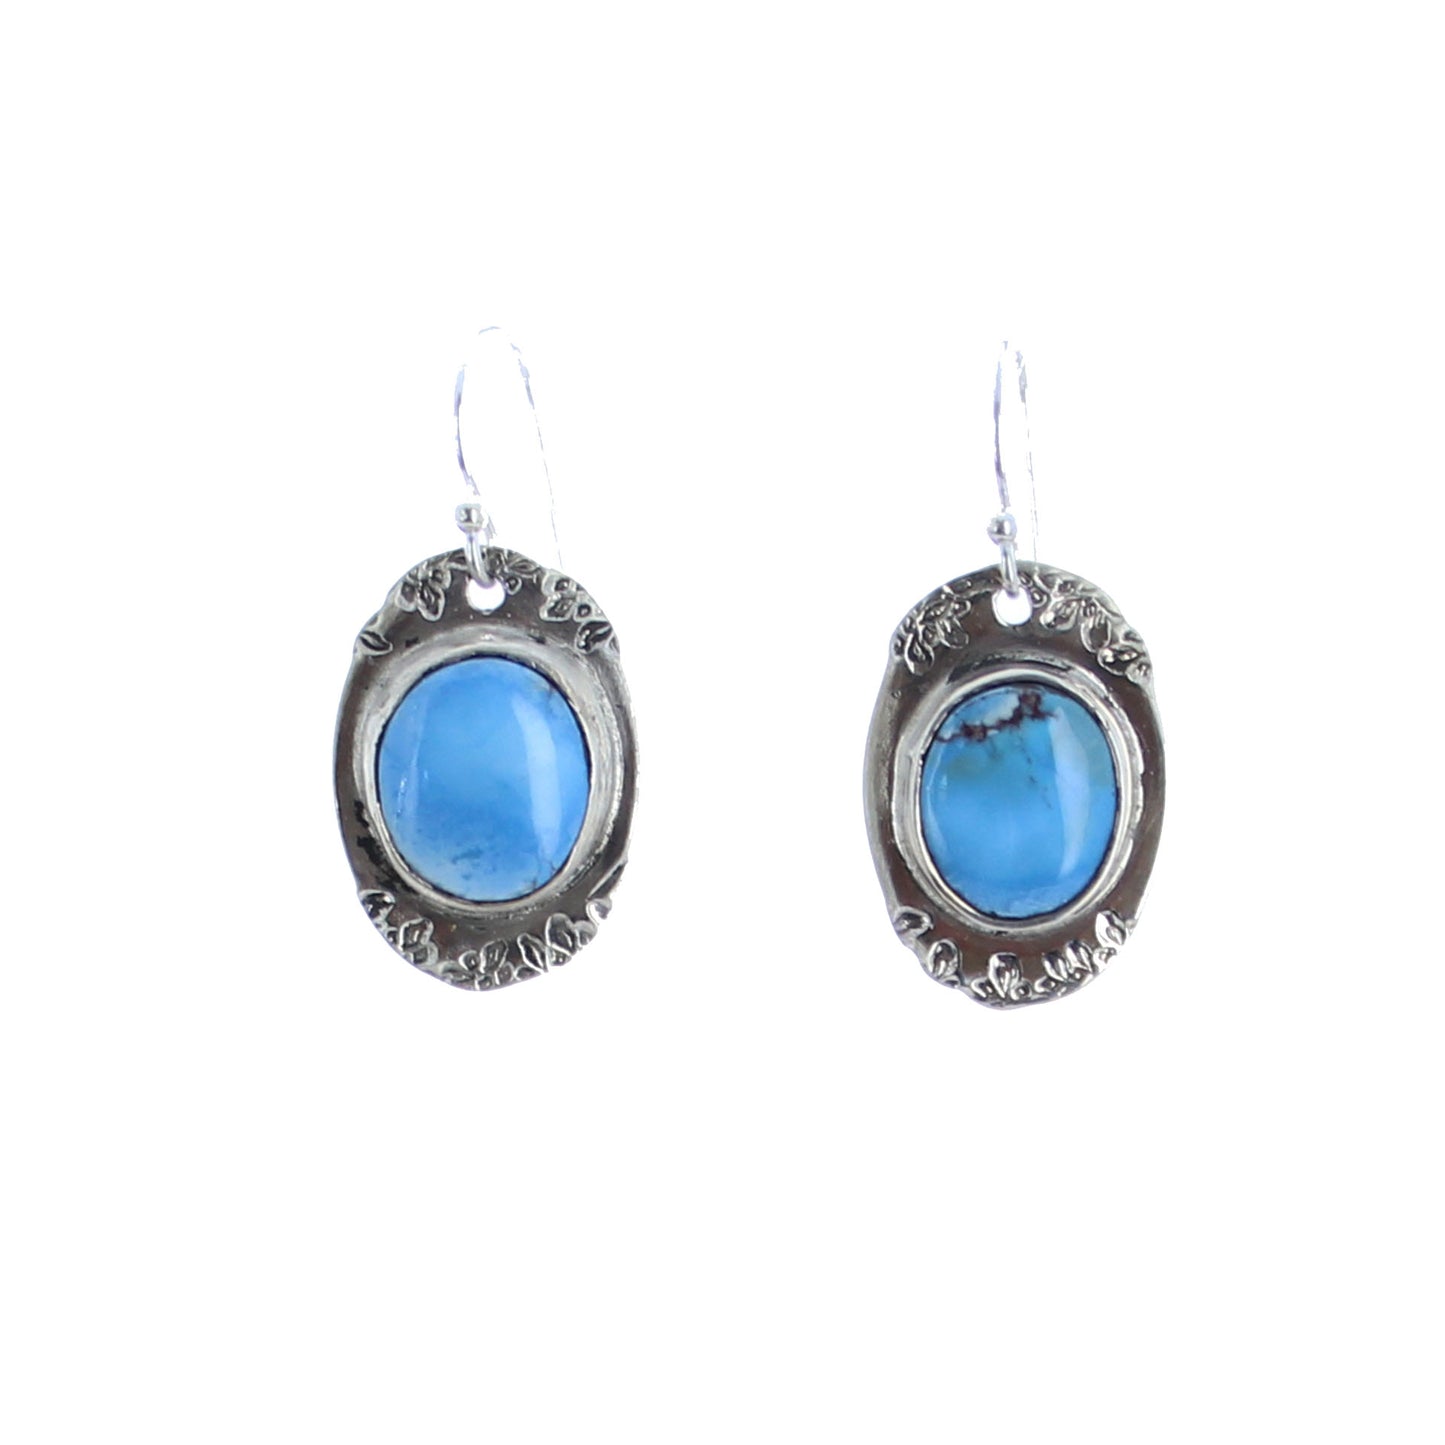 Kazakhstan Turquoise Earrings Sterling Silver Oval Drops -NewWorldGems